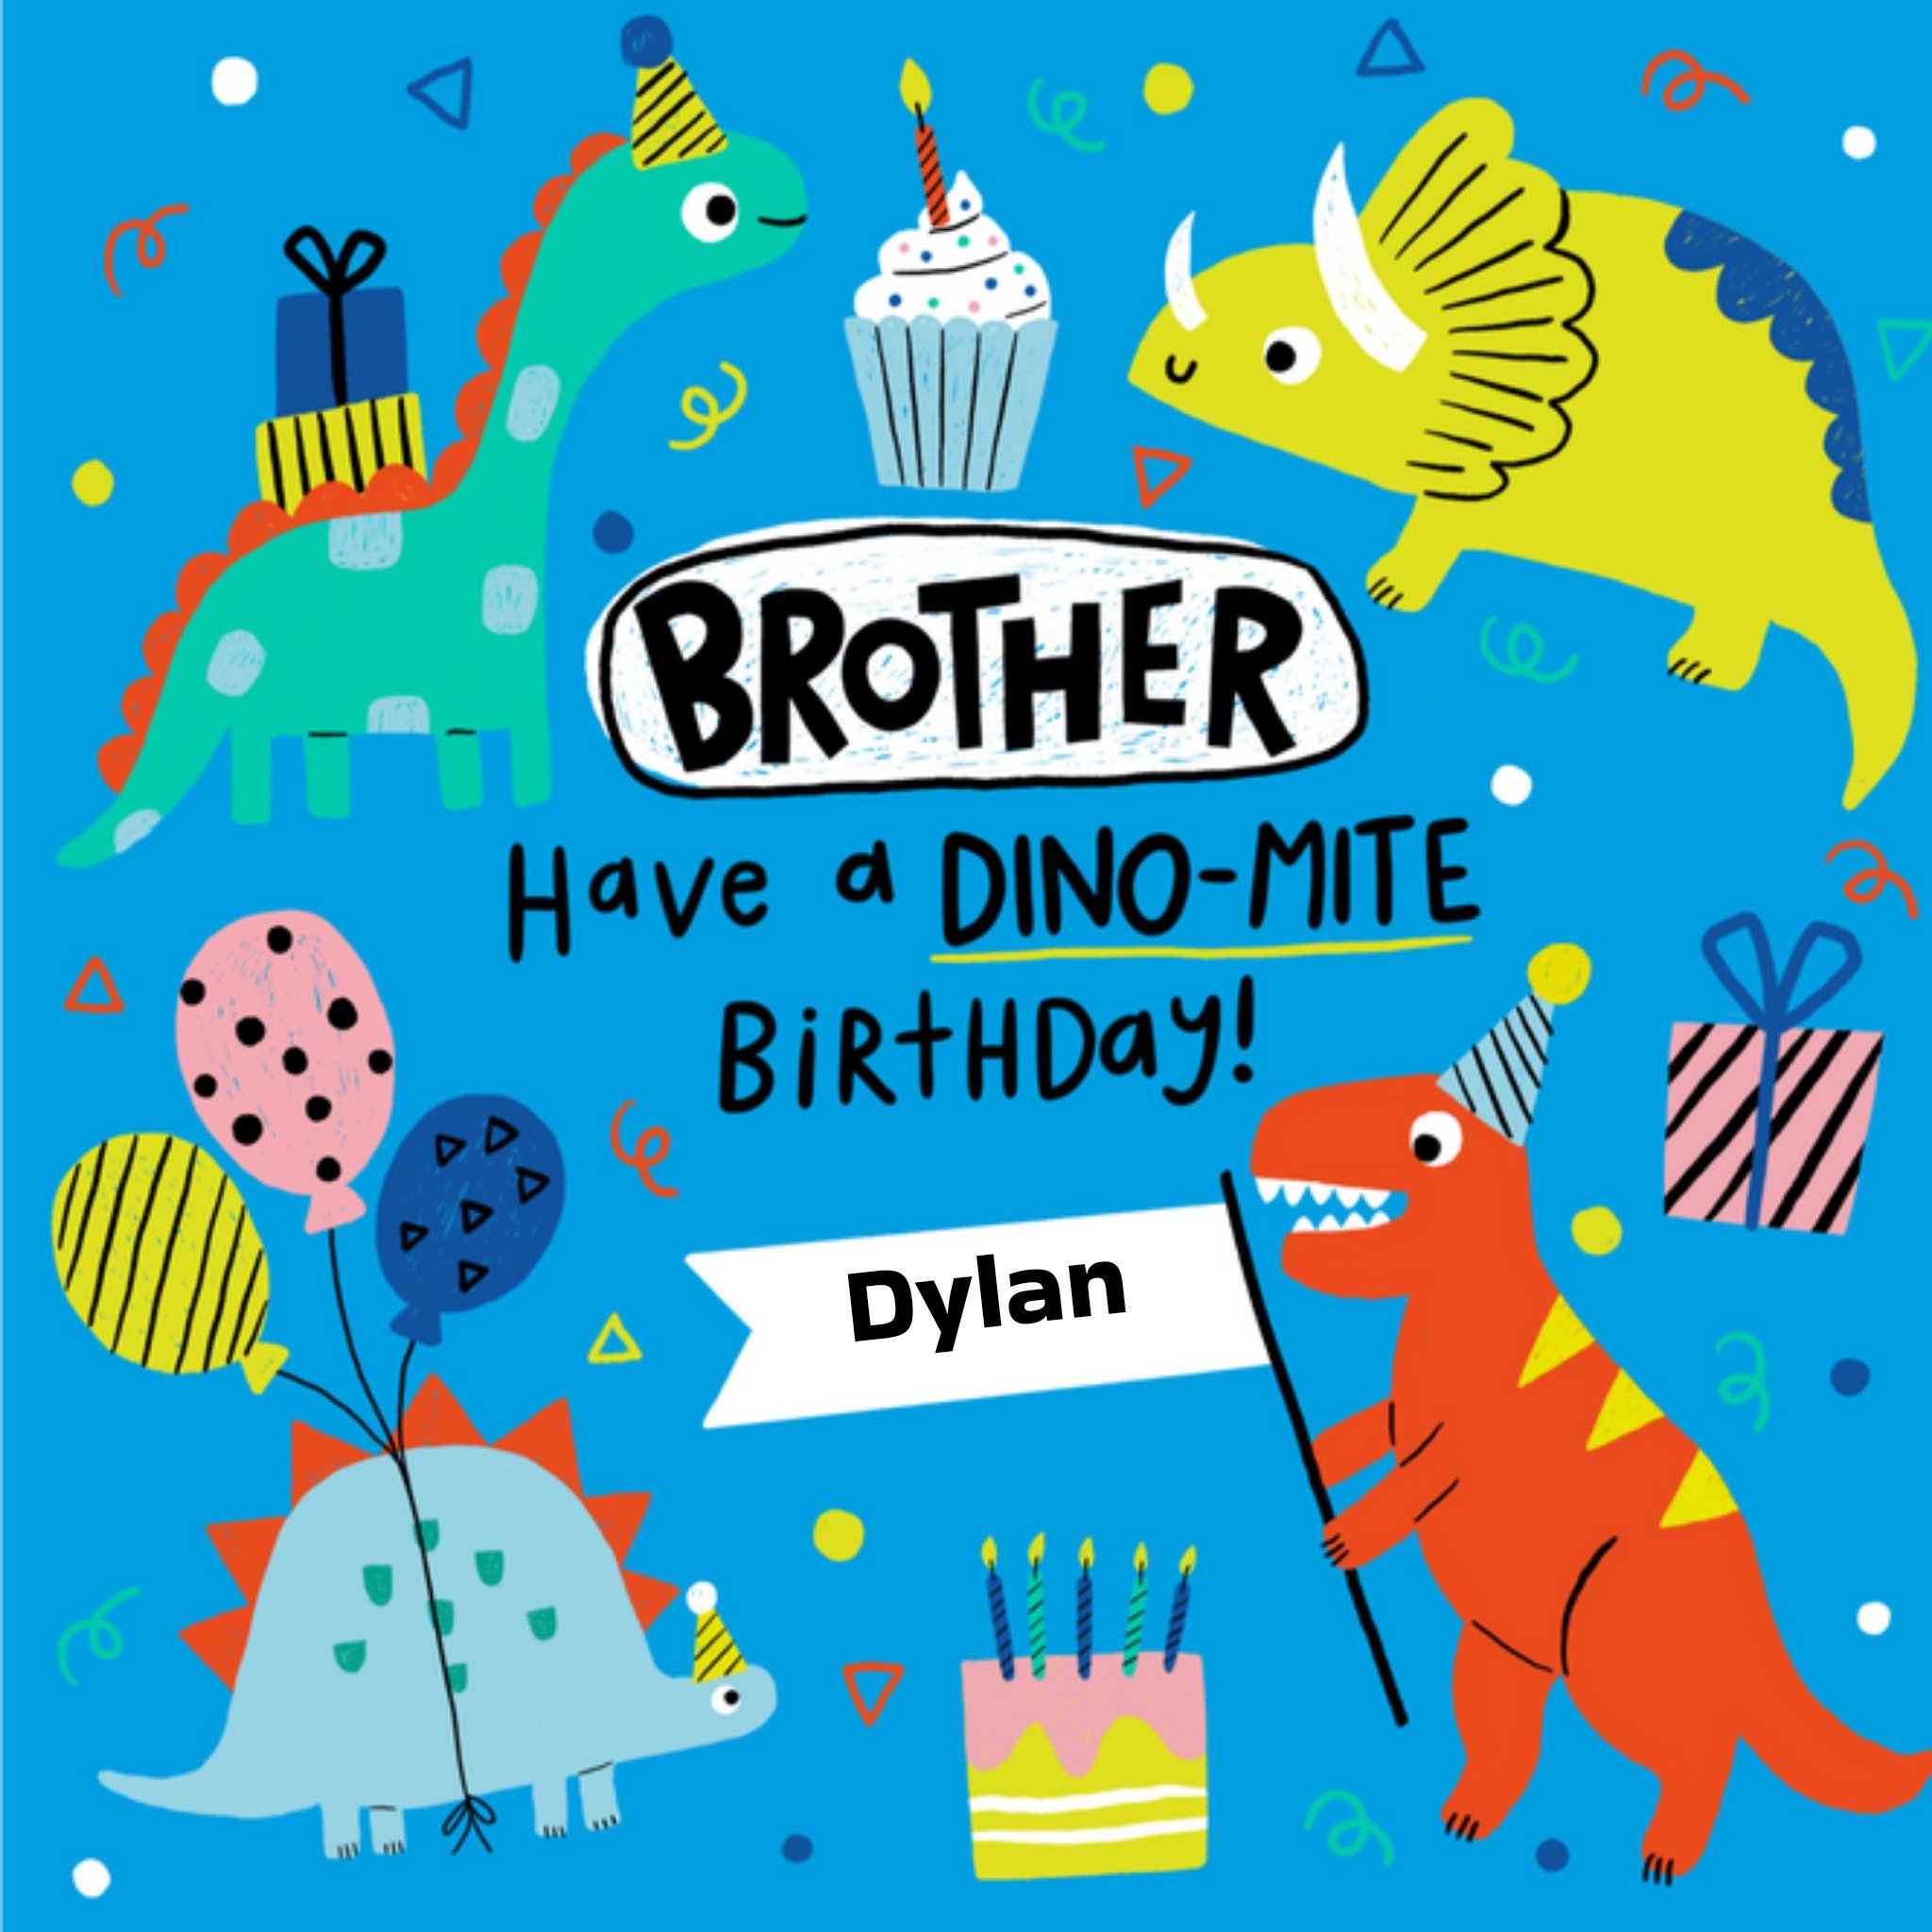 Verjaardagskaart - Dino-mite birthday!